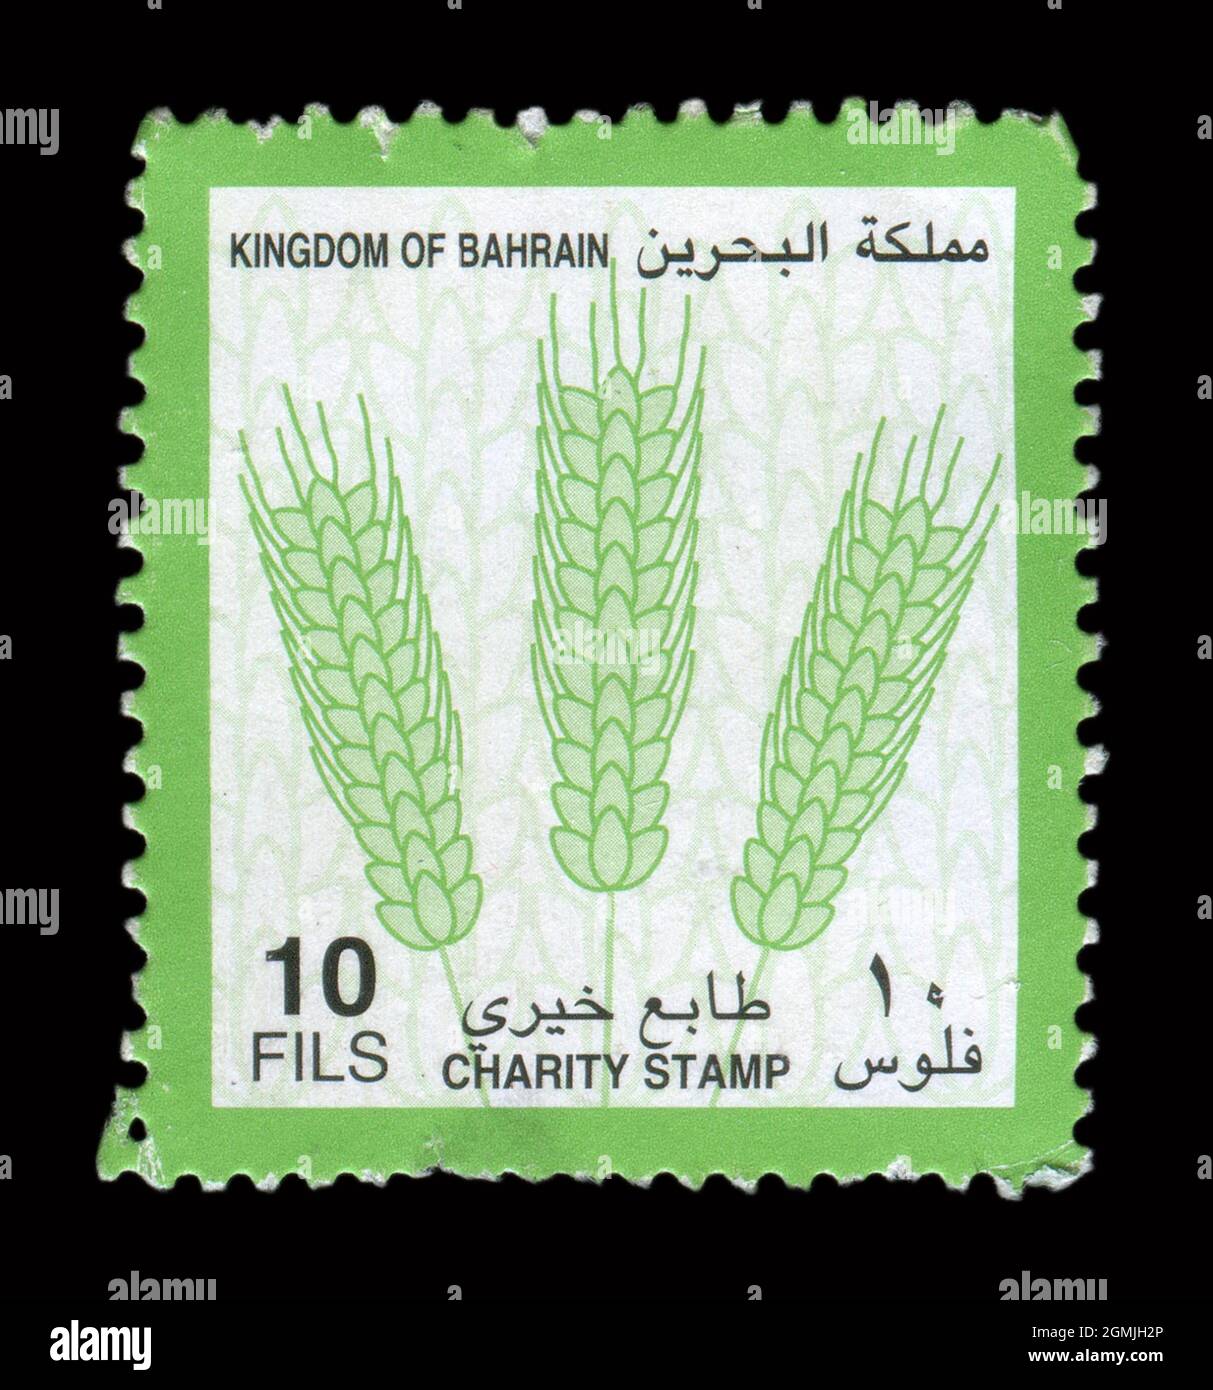 Die im Königreich Bahrain gedruckte Briefmarke zeigt das Bild des Charity Stamp. Stockfoto